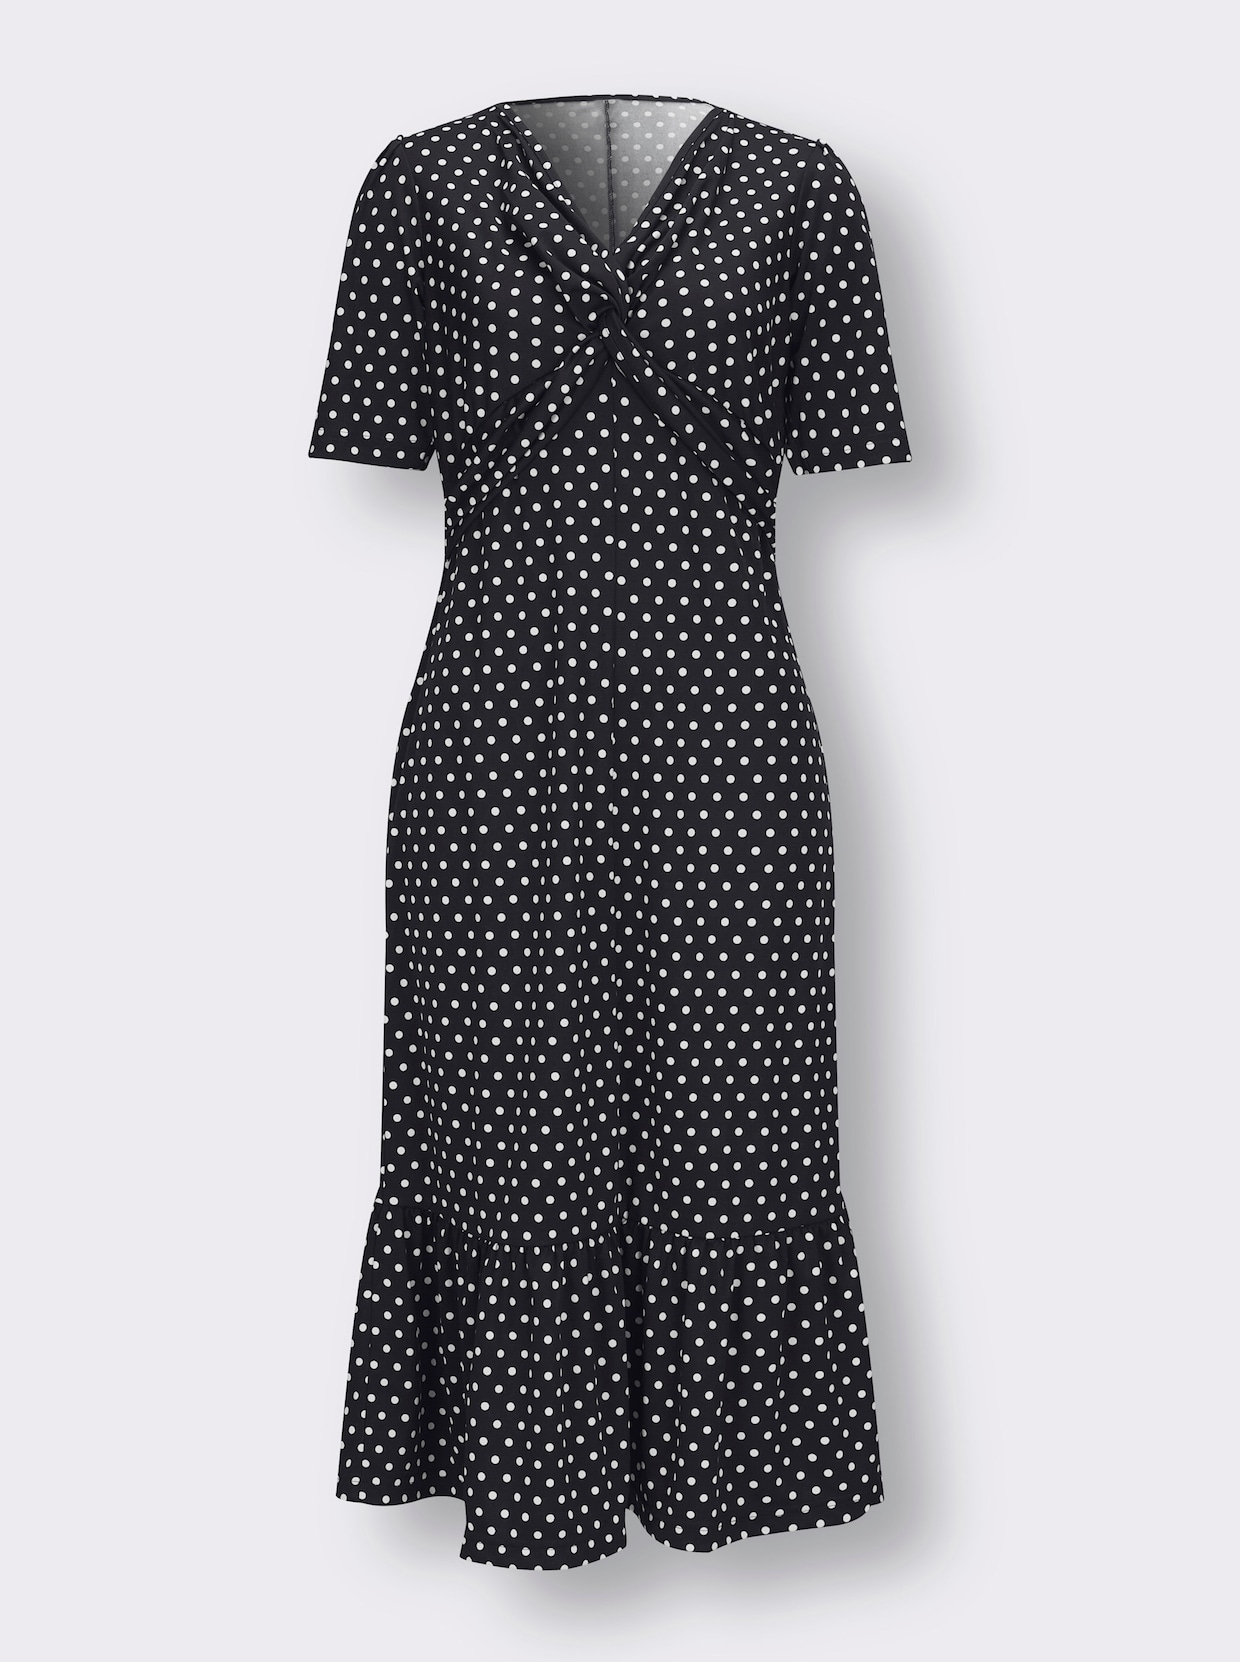 Úpletové šaty - Čierno-biele bodkovanie